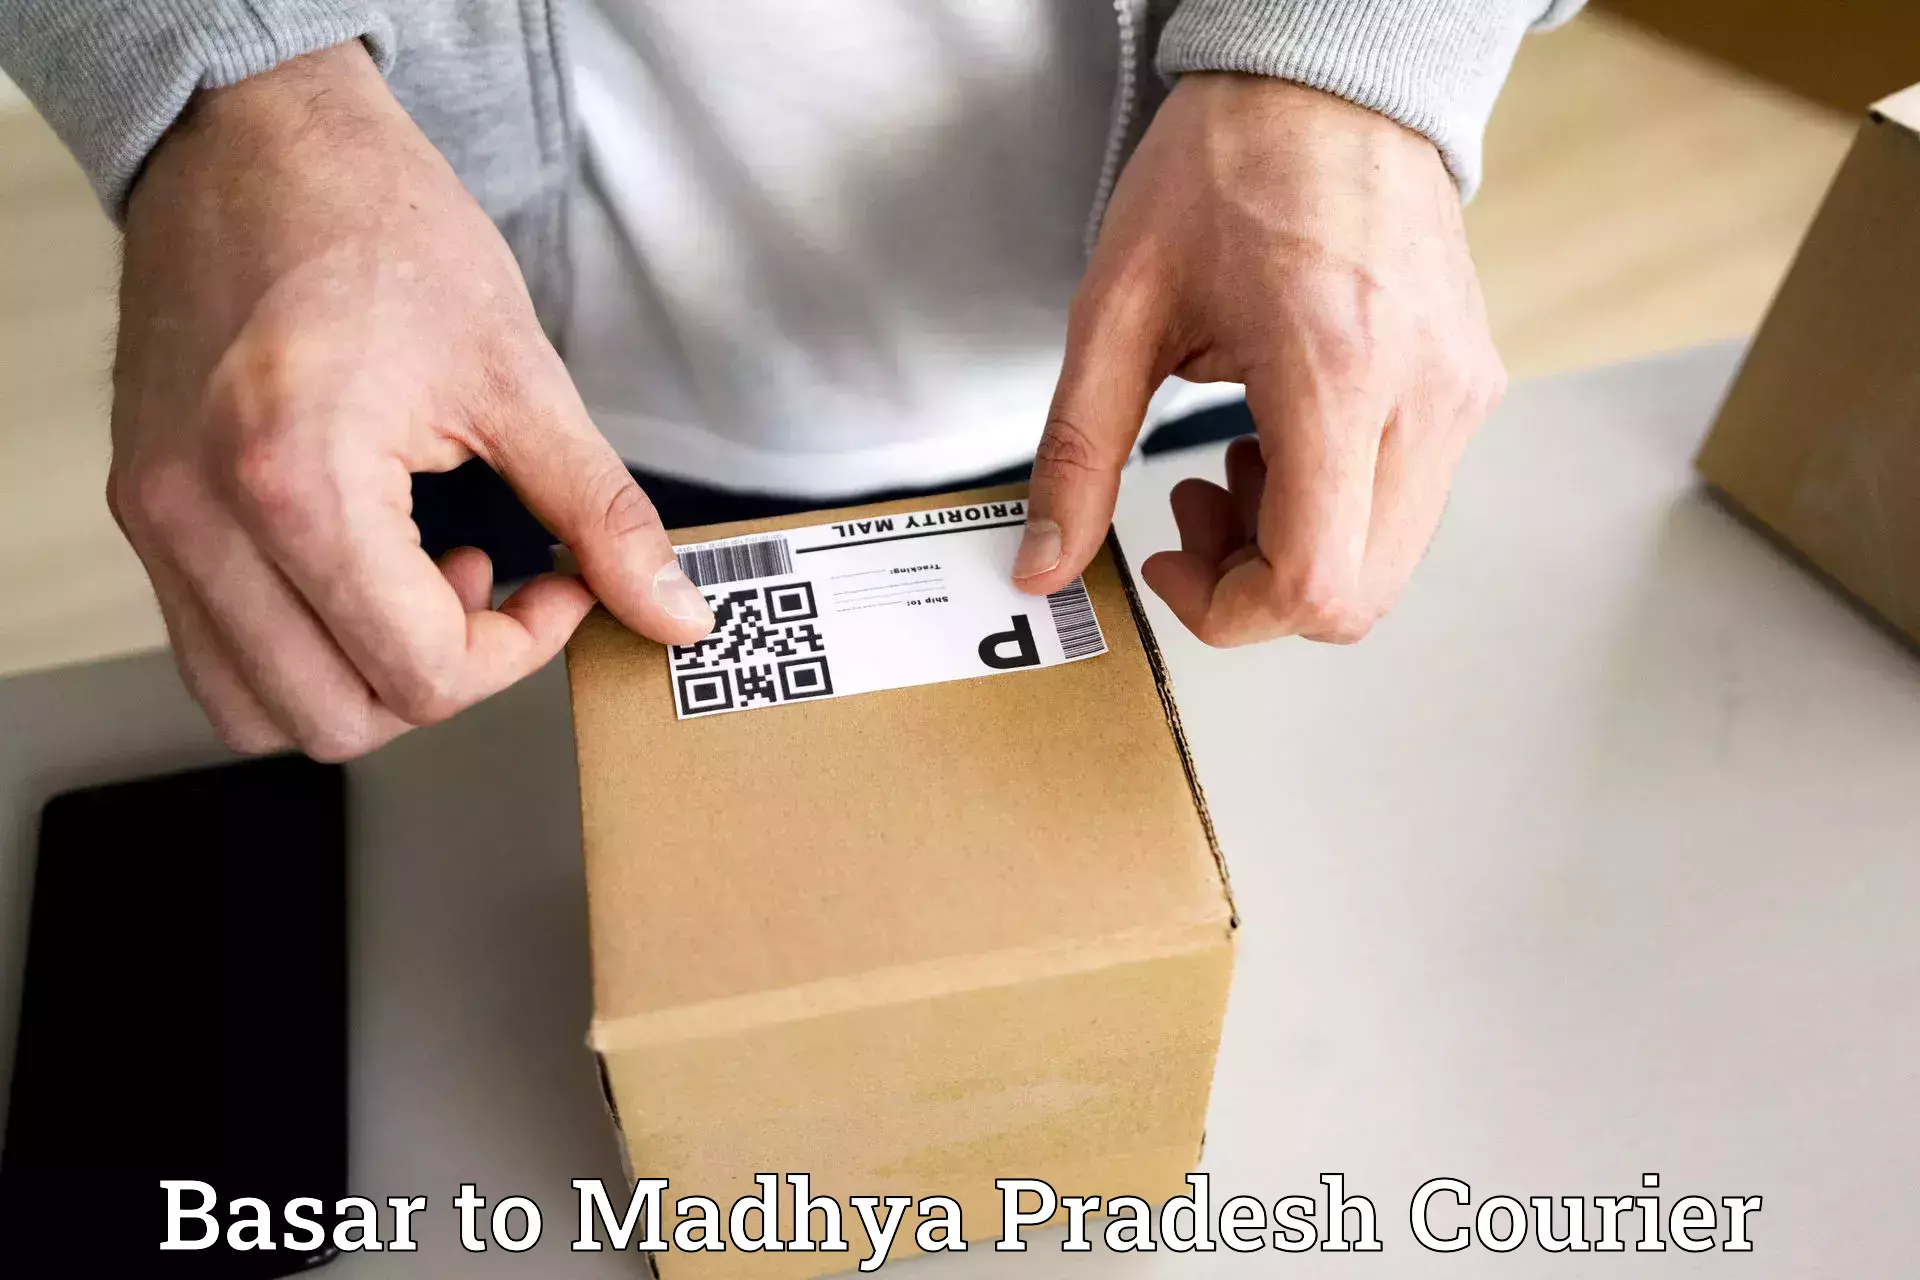 Reliable courier services Basar to Jaitwara